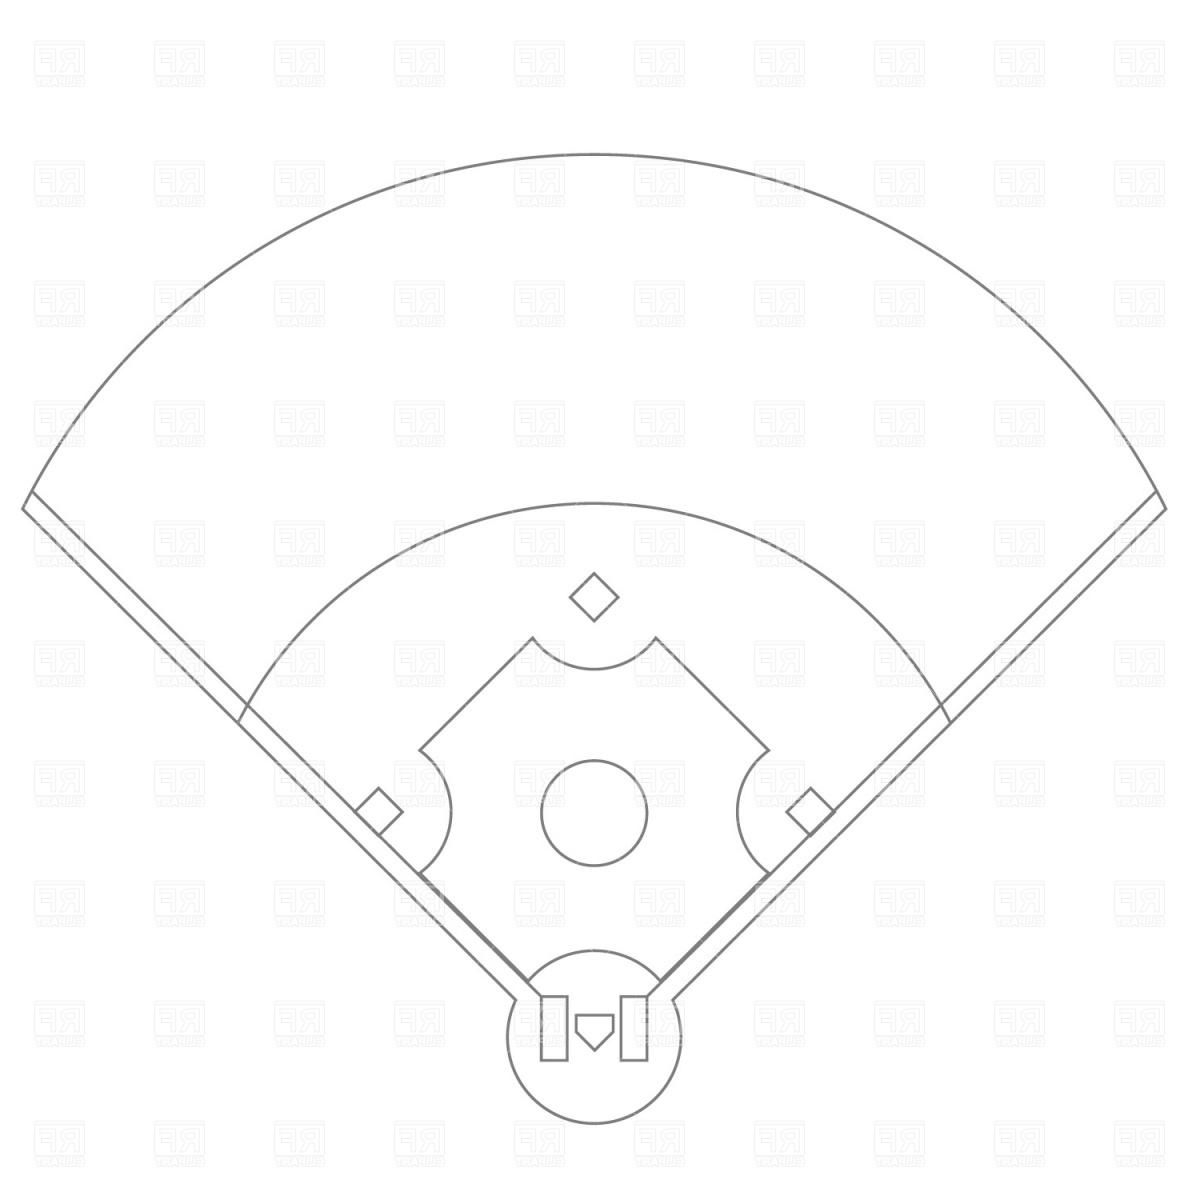 Baseball field outline.